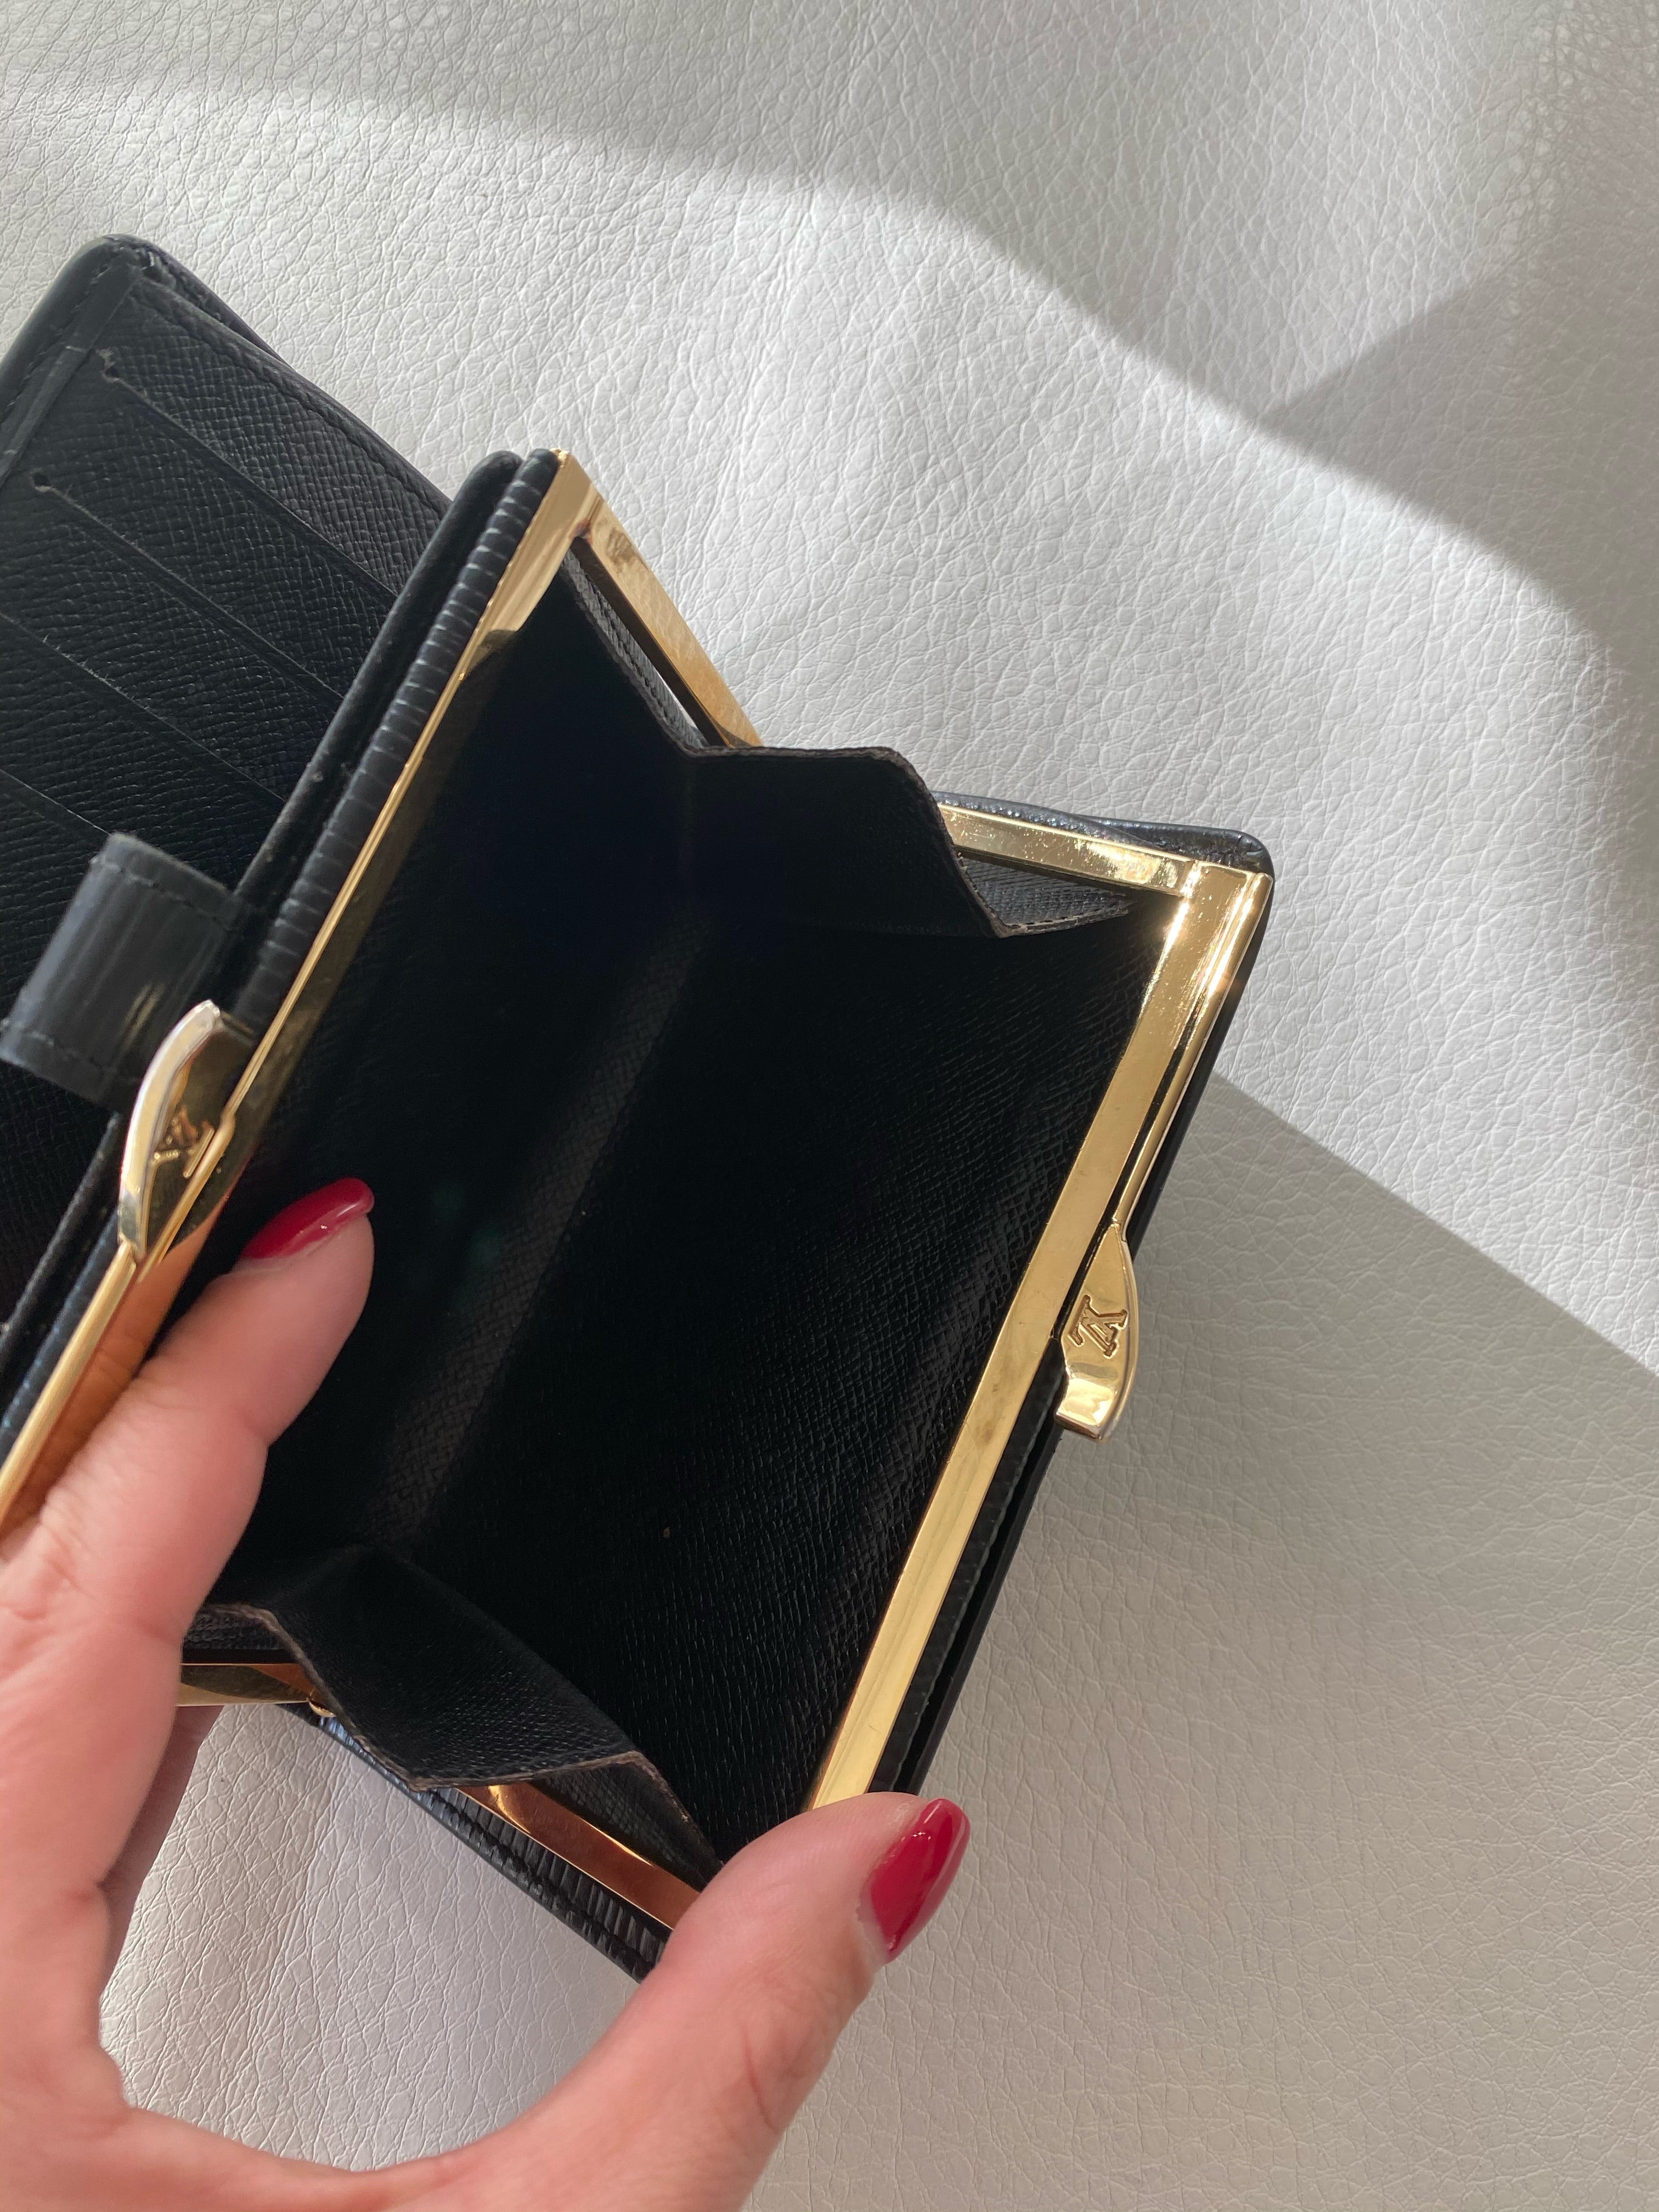 Louis Vuitton card case – Beccas Bags